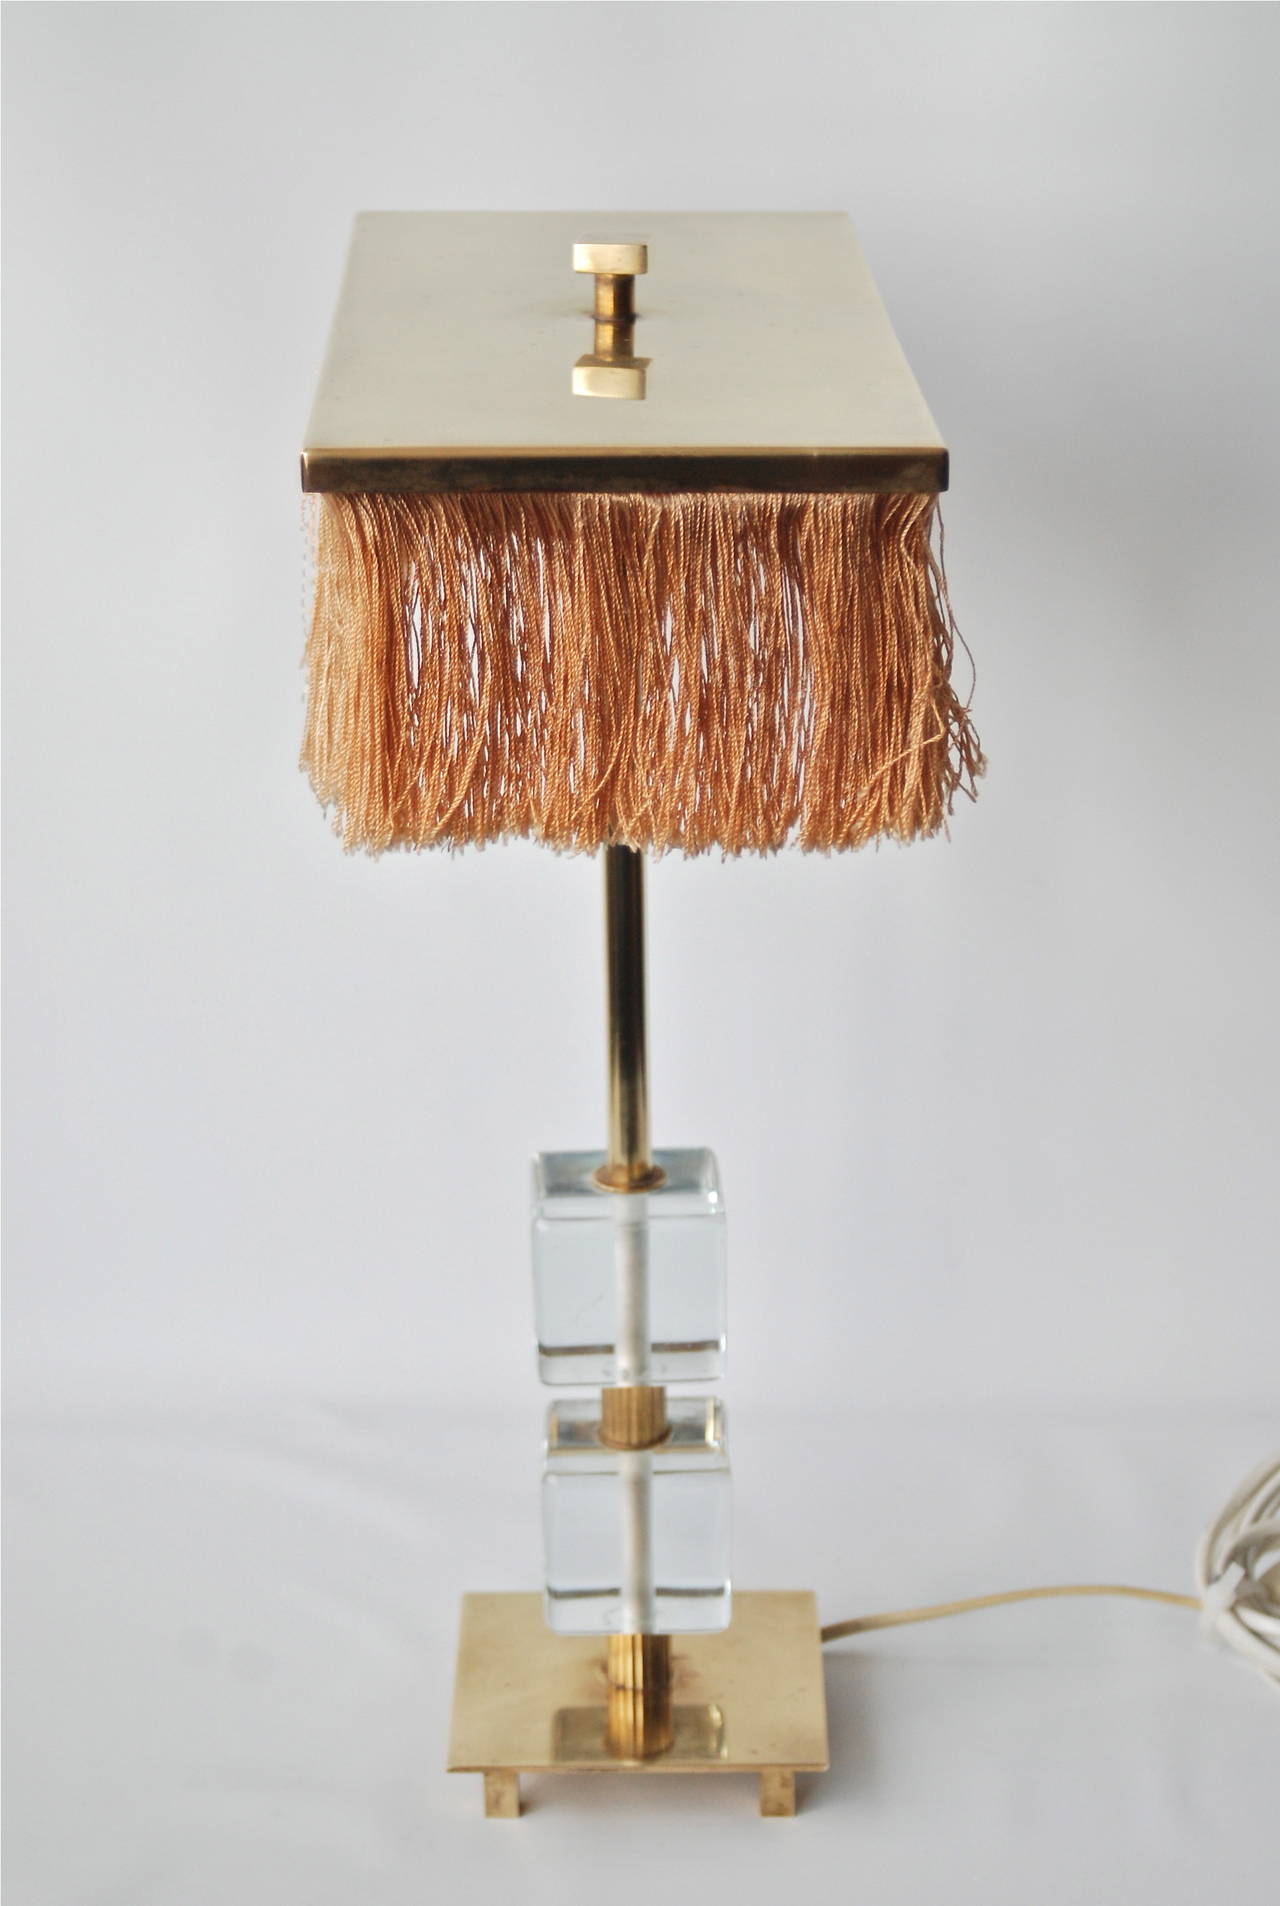 Mid-20th Century Swedish Table Lamp